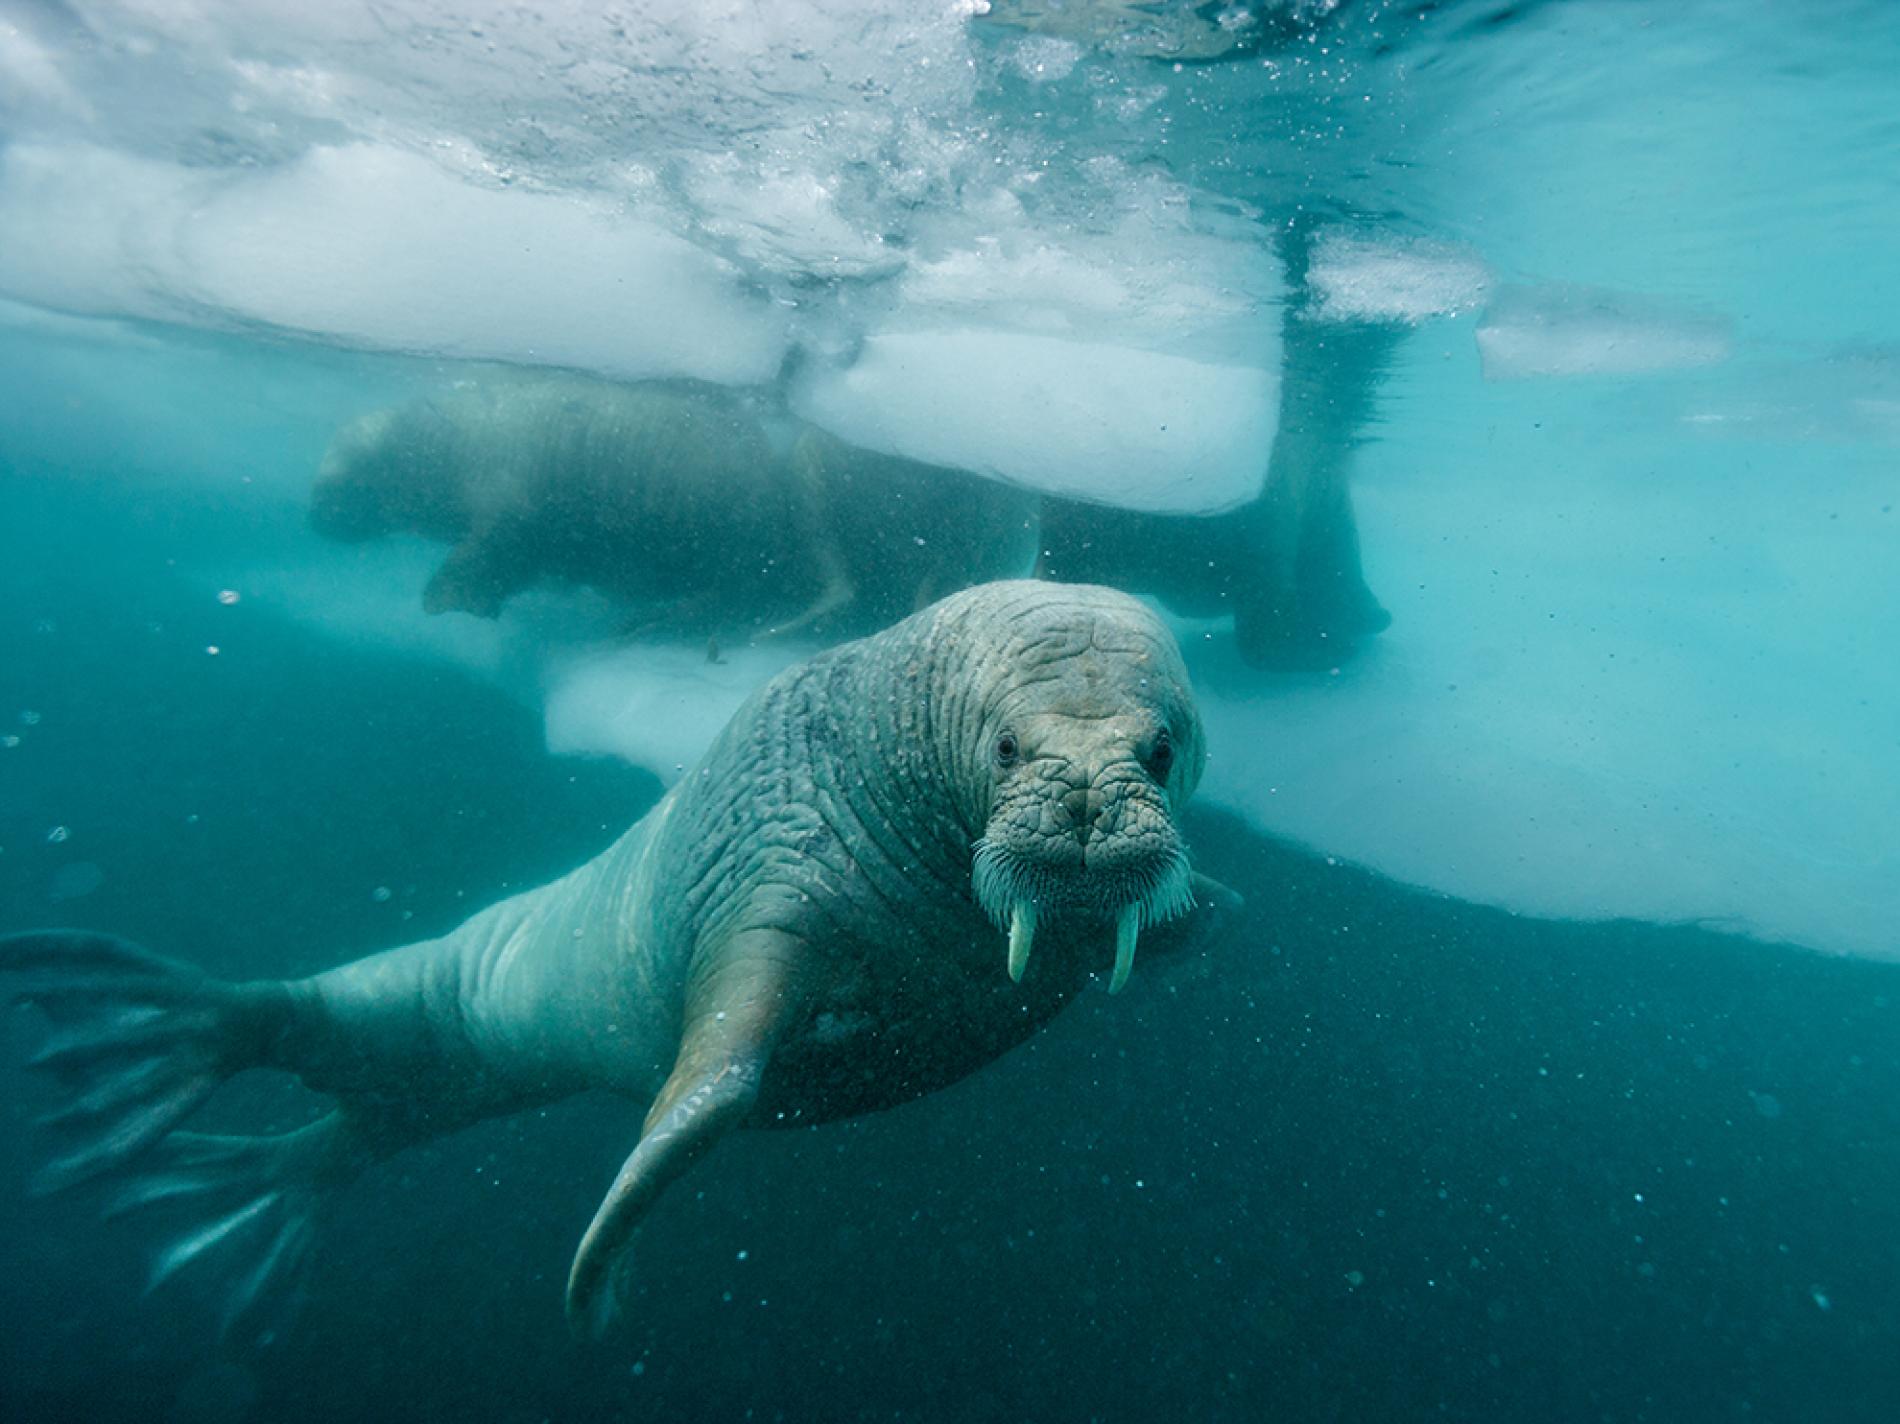 Walrus zem ūdens Grenlandes krastā